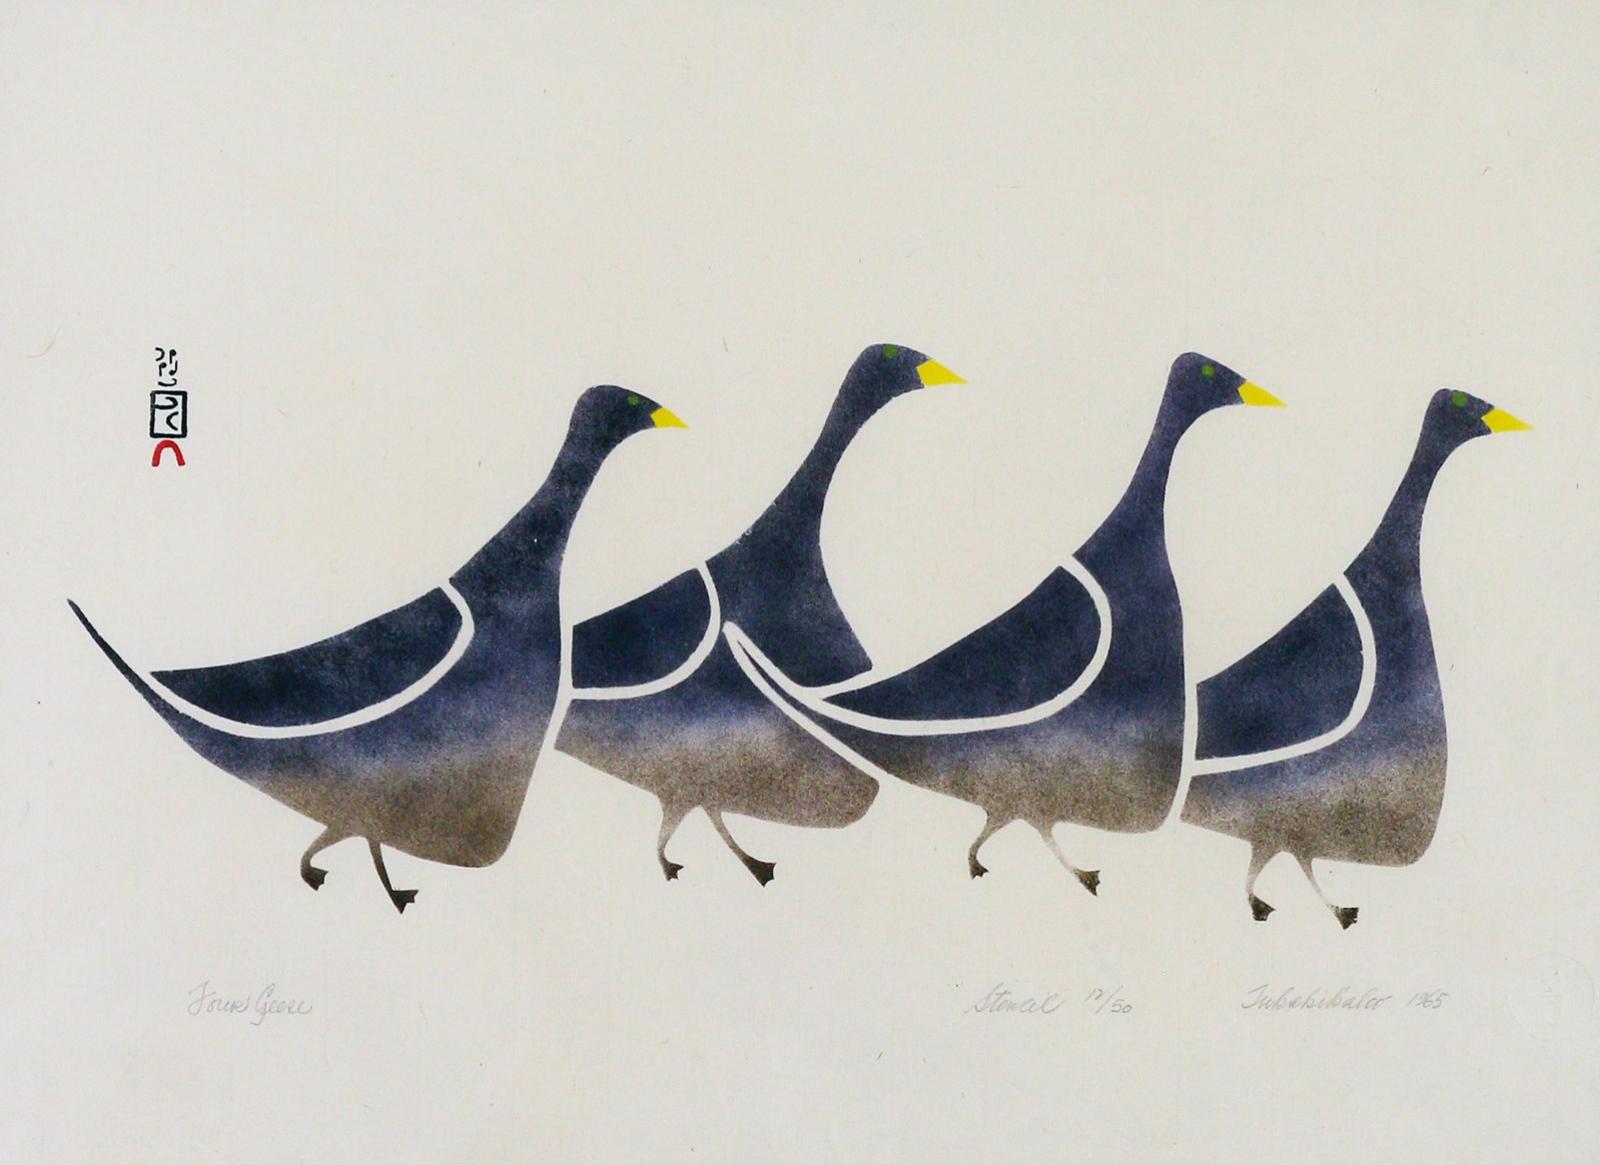 Tukakikaloo (1943) - Four Geese; 1965